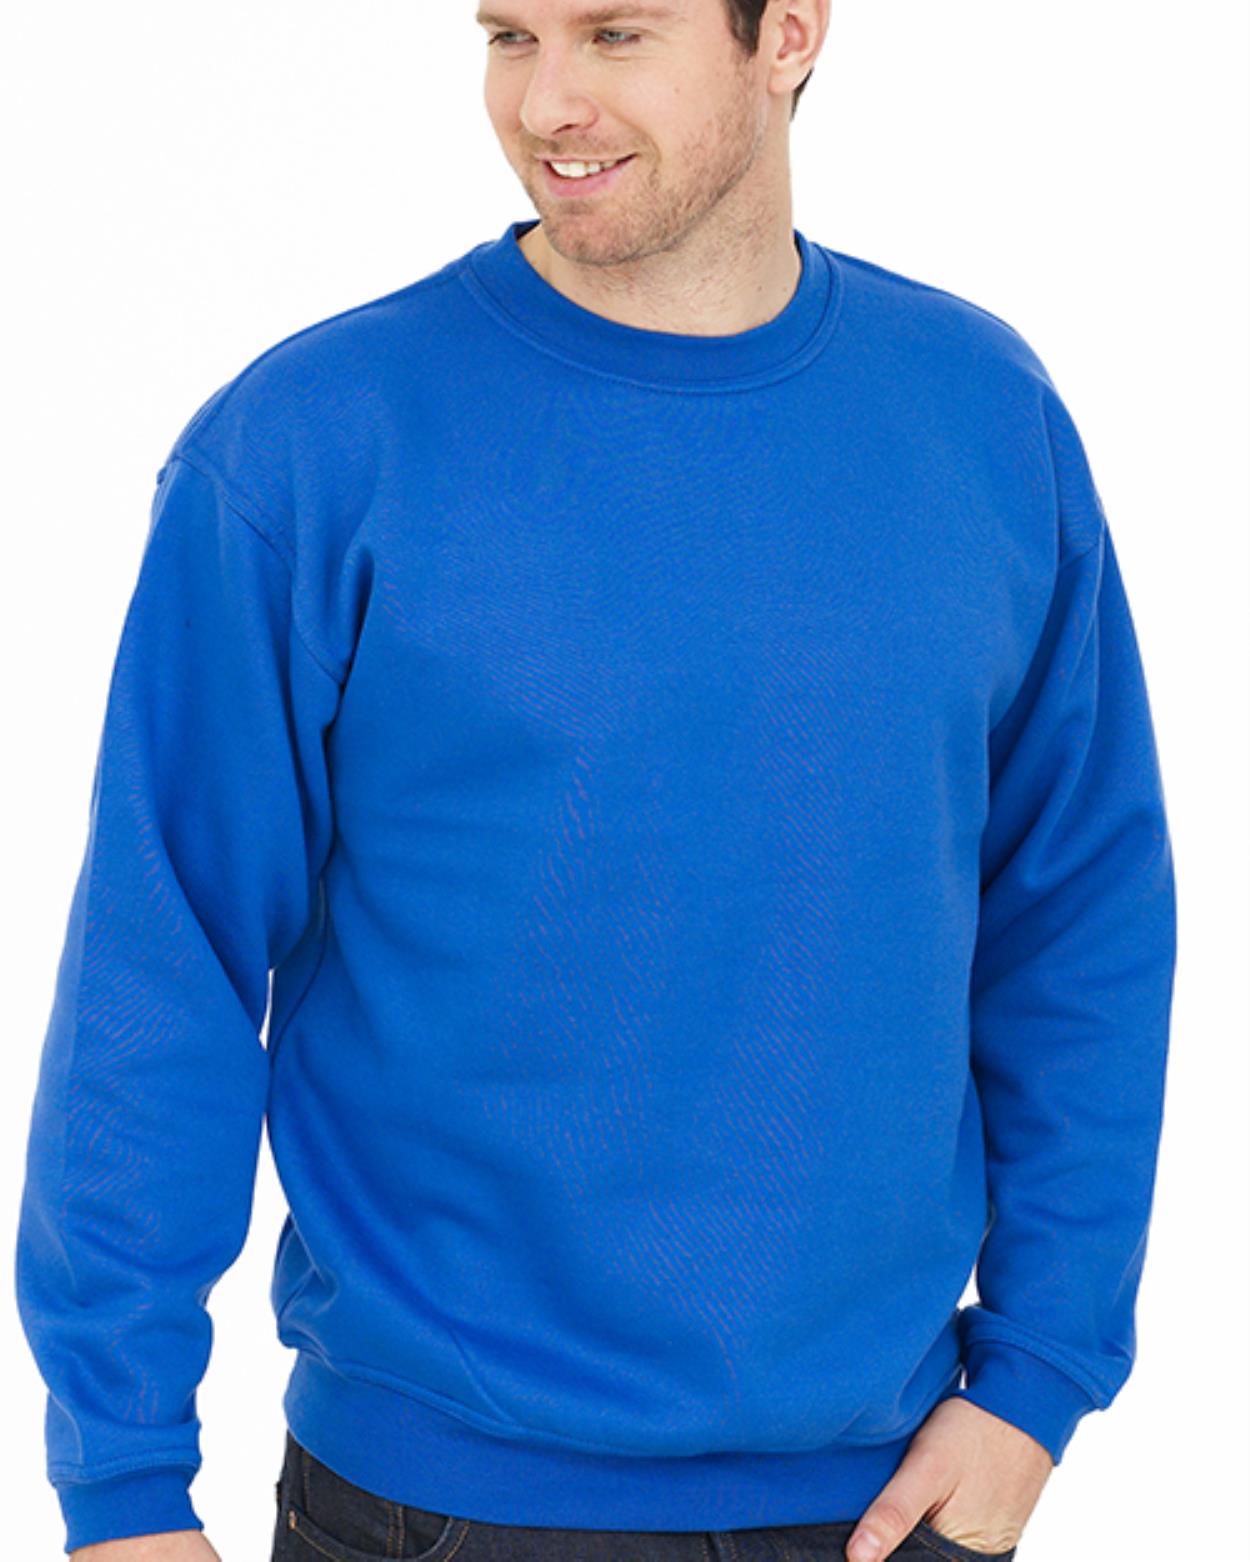 UC201 Premium Sweatshirt main image